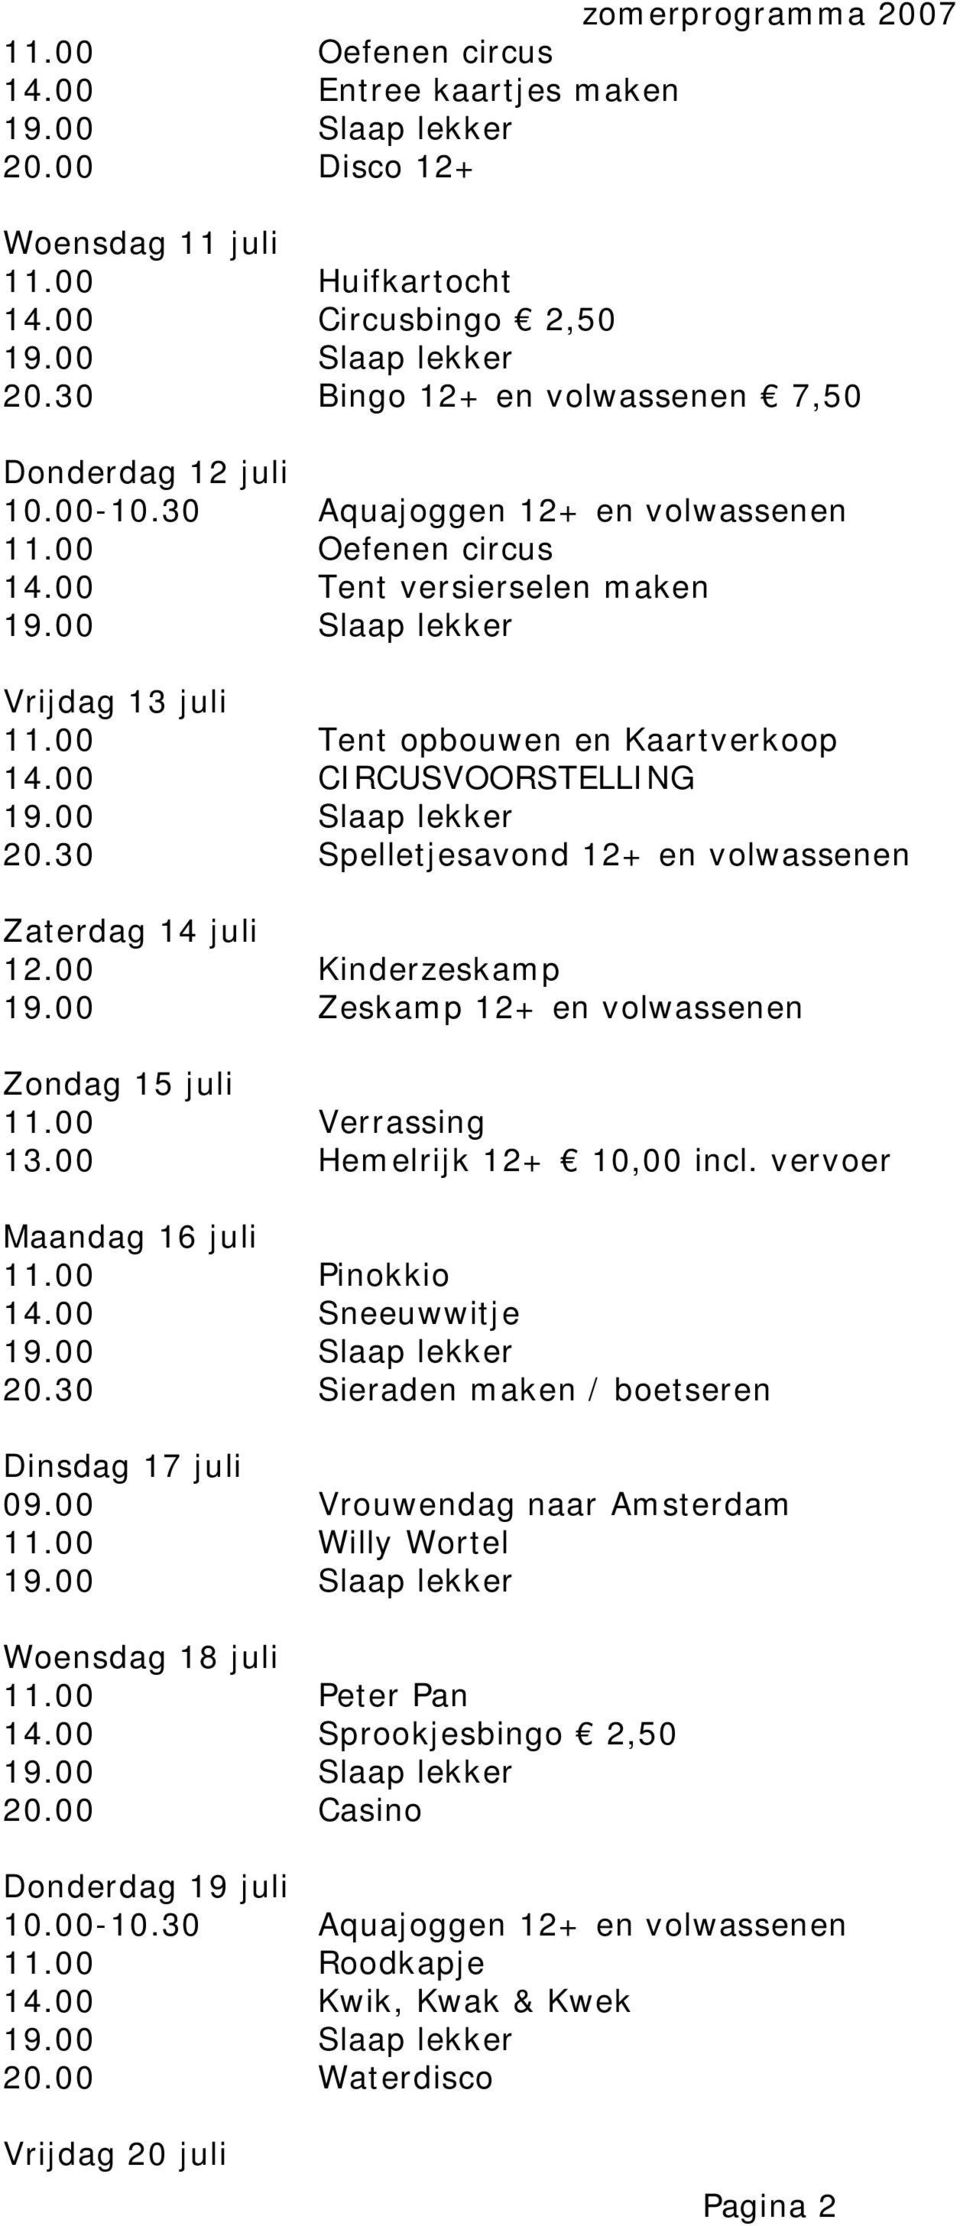 00 Hemelrijk 12+ 10,00 incl. vervoer Maandag 16 juli 11.00 Pinokkio 14.00 Sneeuwwitje 20.30 Sieraden maken / boetseren Dinsdag 17 juli 09.00 Vrouwendag naar Amsterdam 11.